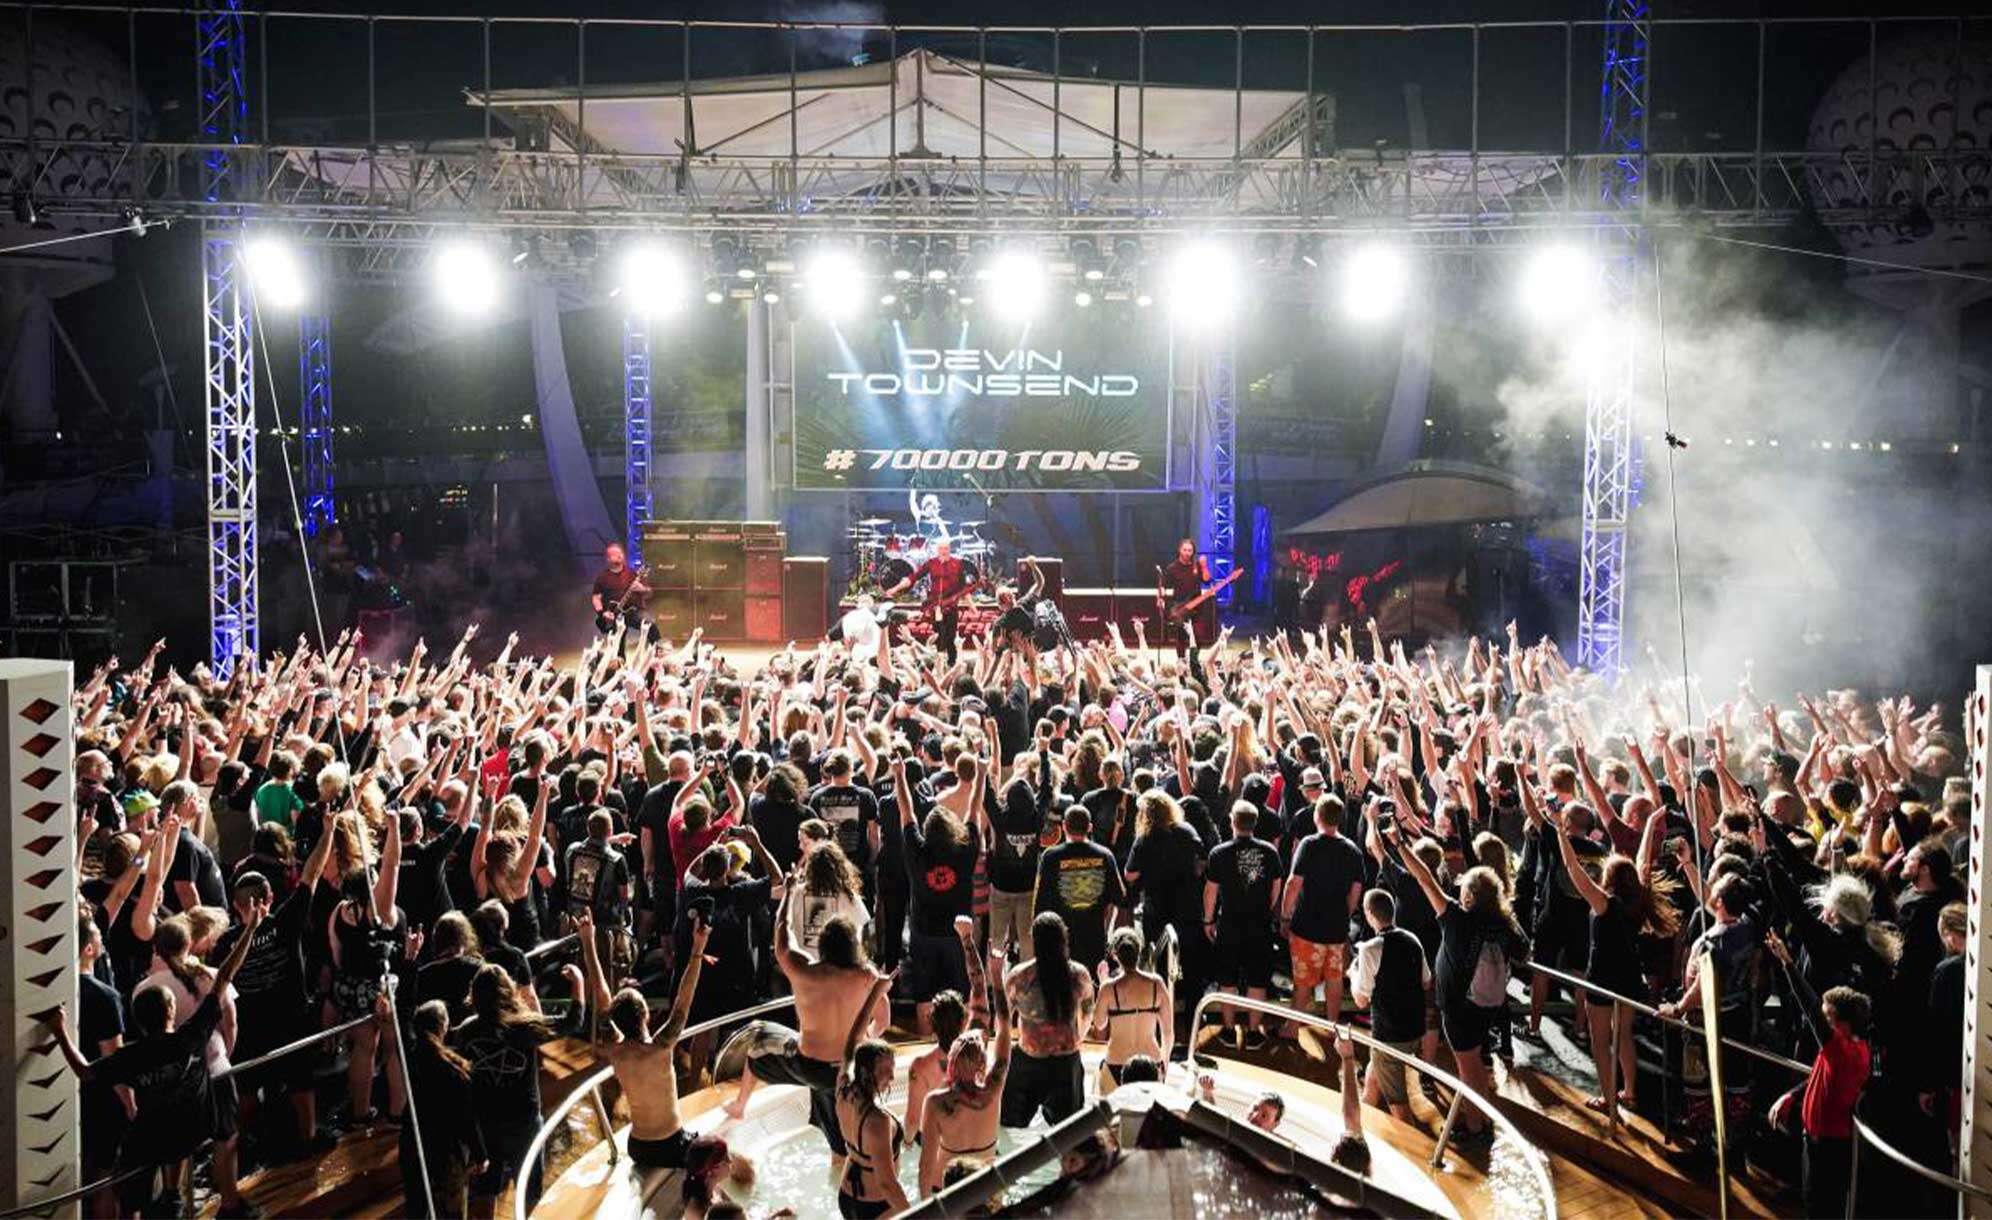 Bild von den 70000 Tons of Metal und einem großen Konzert an Deck der Cruise bei Nacht